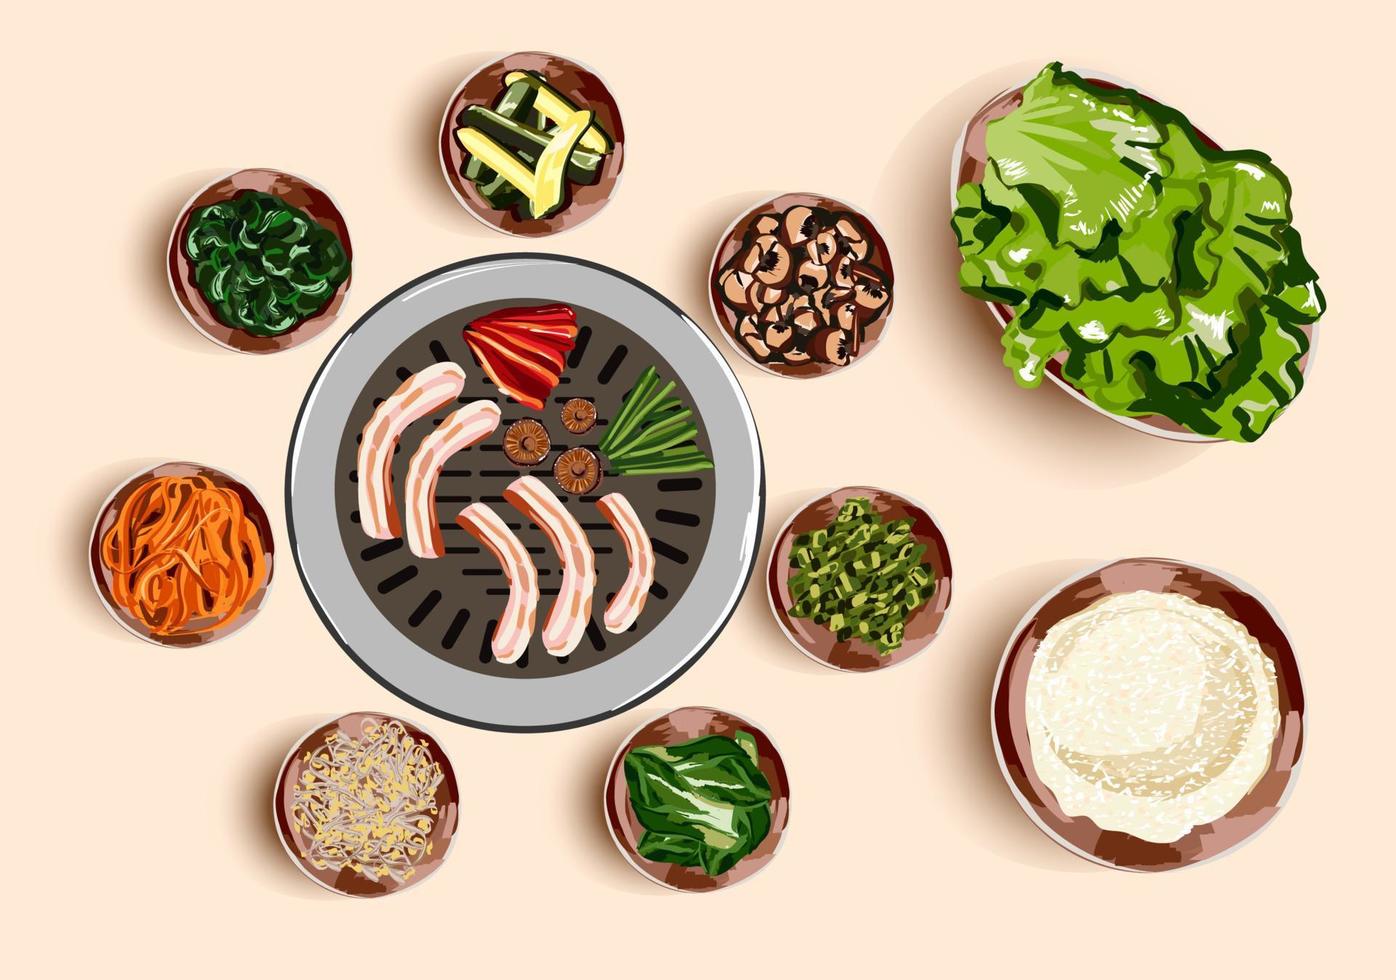 traditioneel Koreaans voedsel, Koreaans barbecue, grillen rundvlees, barbecueën. gegrild snacks. illustratie voor restaurant menu. top visie. vector illustratie.